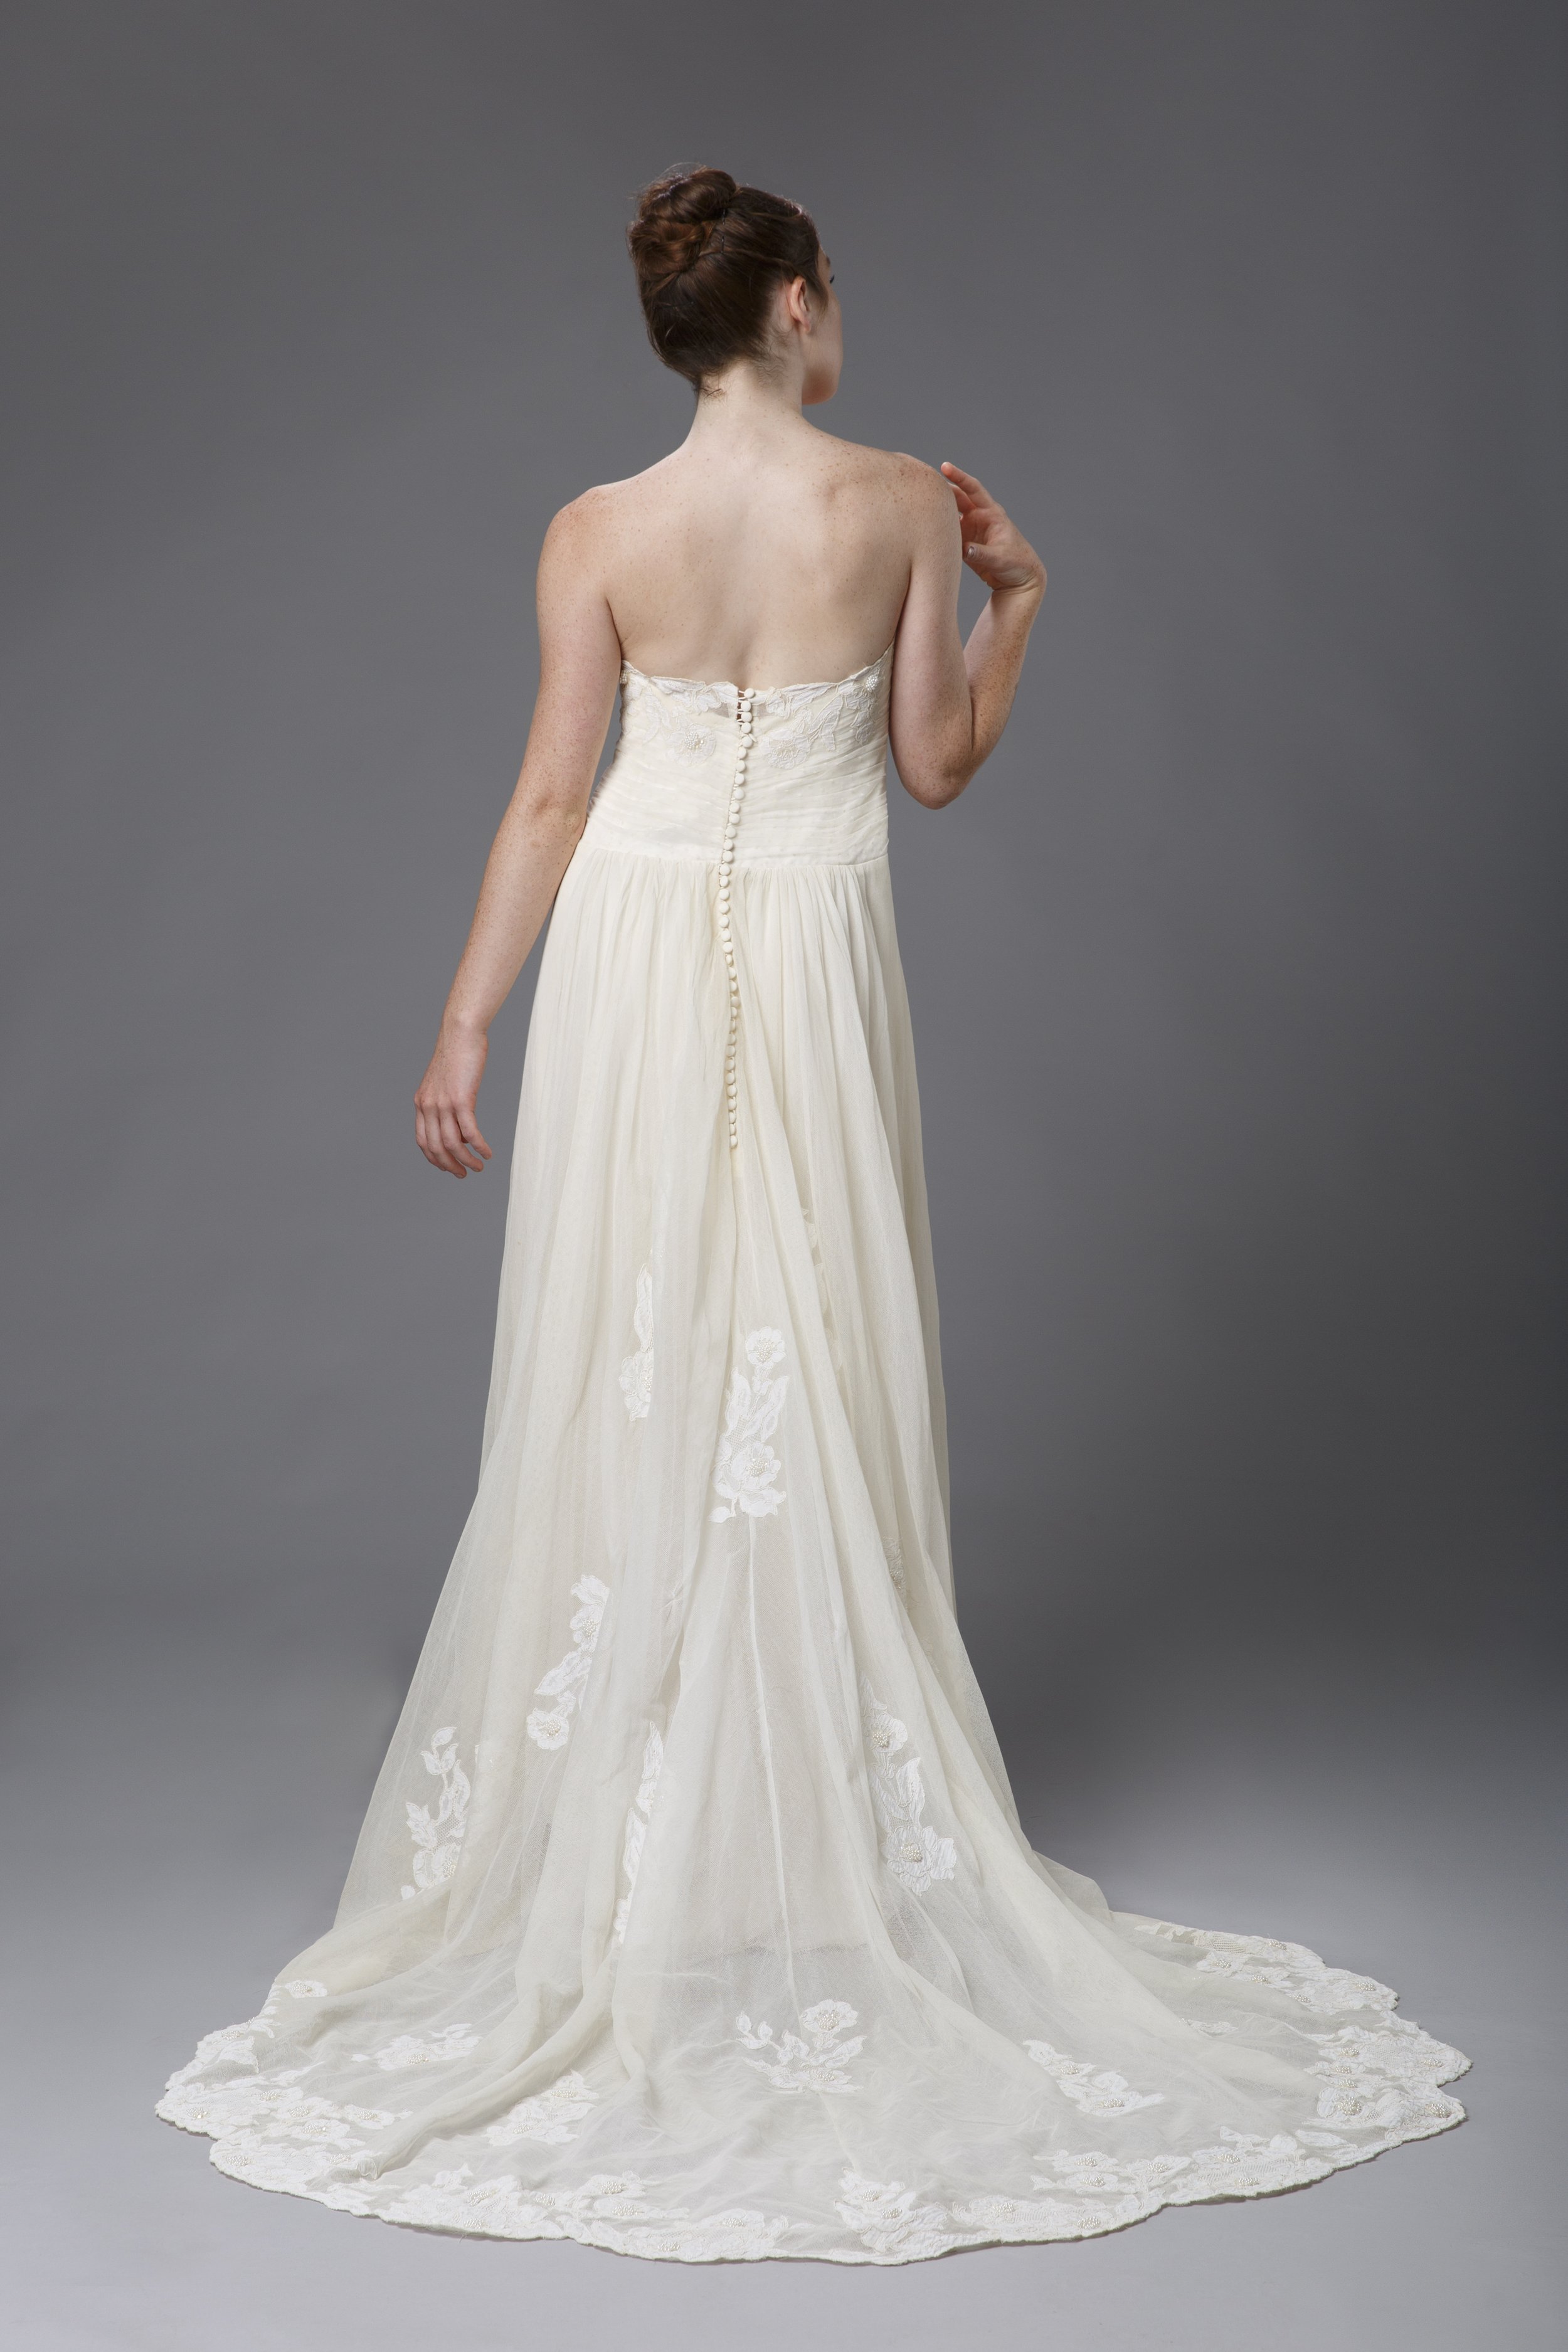 1960s wedding gown retailored.JPG